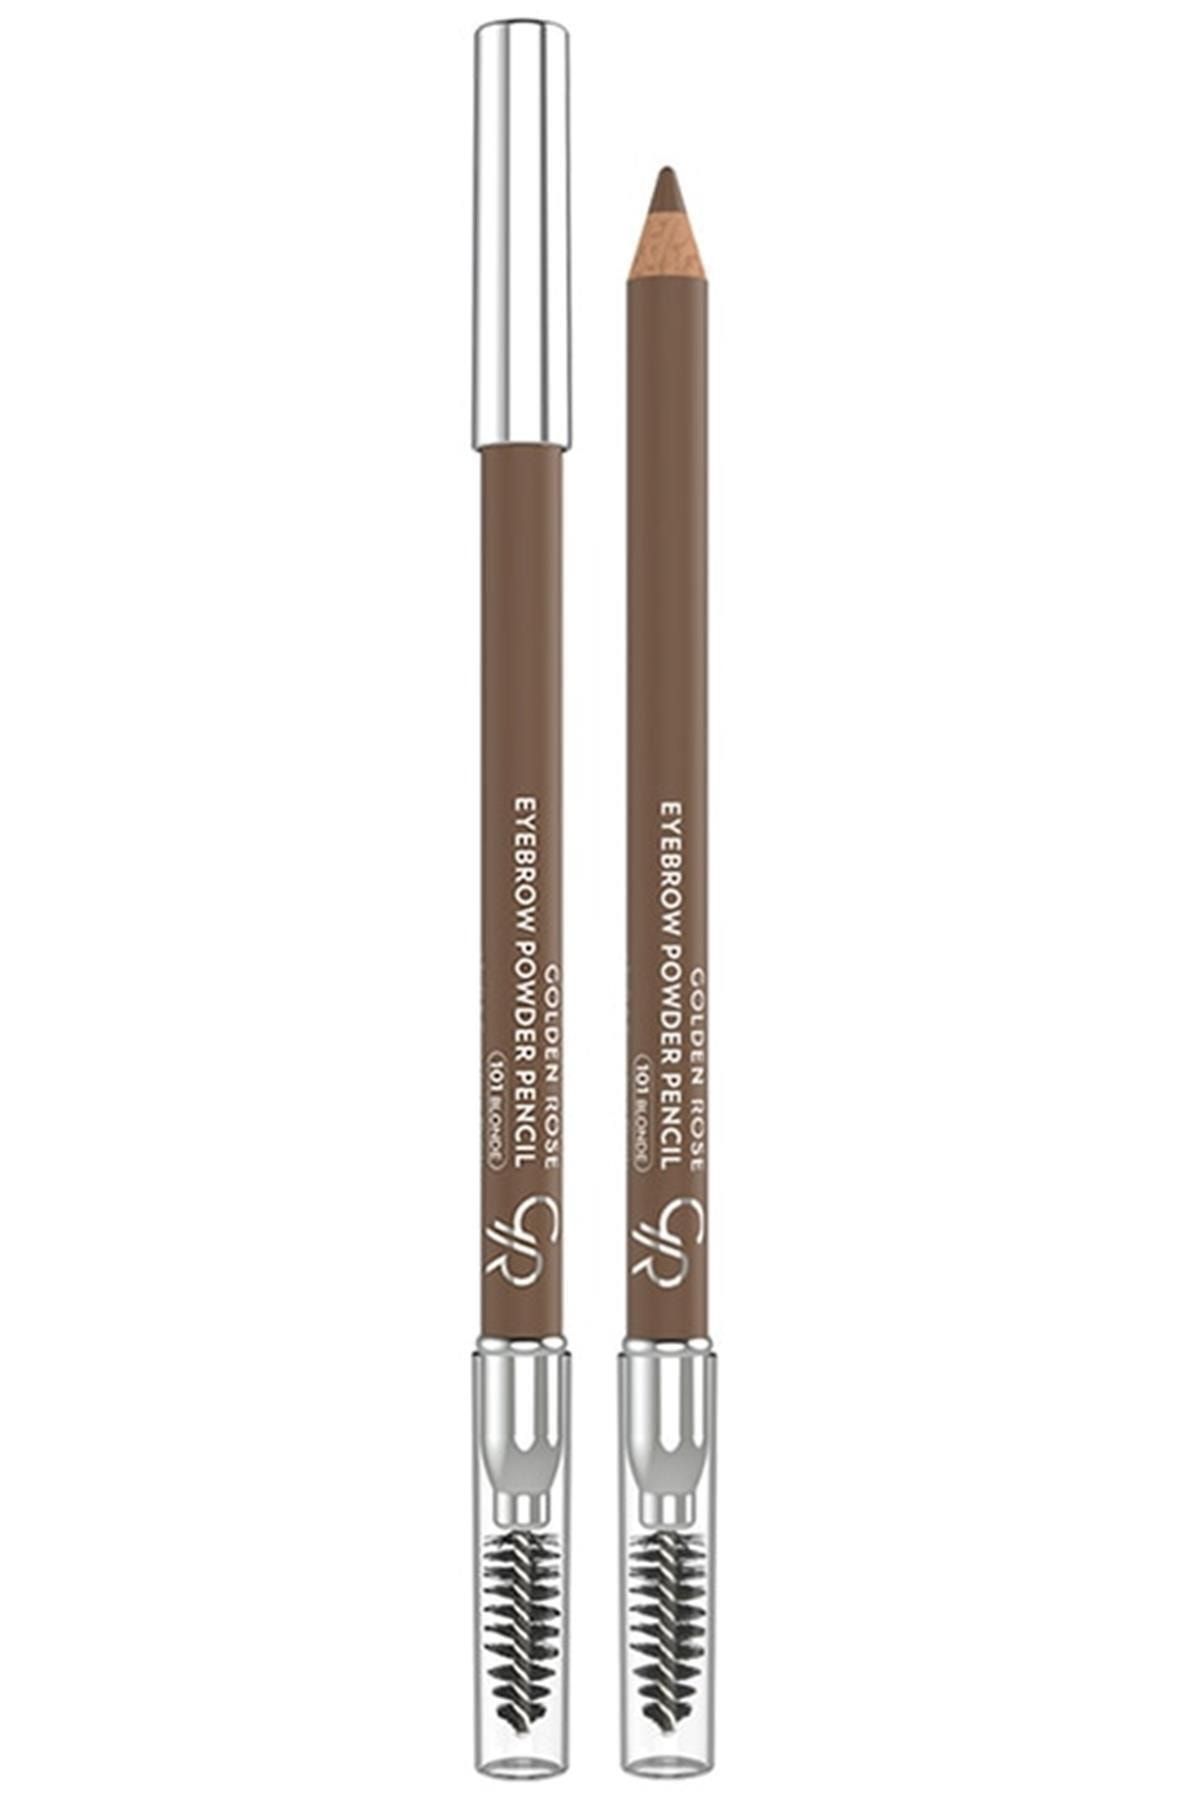 Golden Rose Marka: Eyebrow Powder Pencil Kaş Kalemi 101 Blonde Kategori: Göz Kalemi